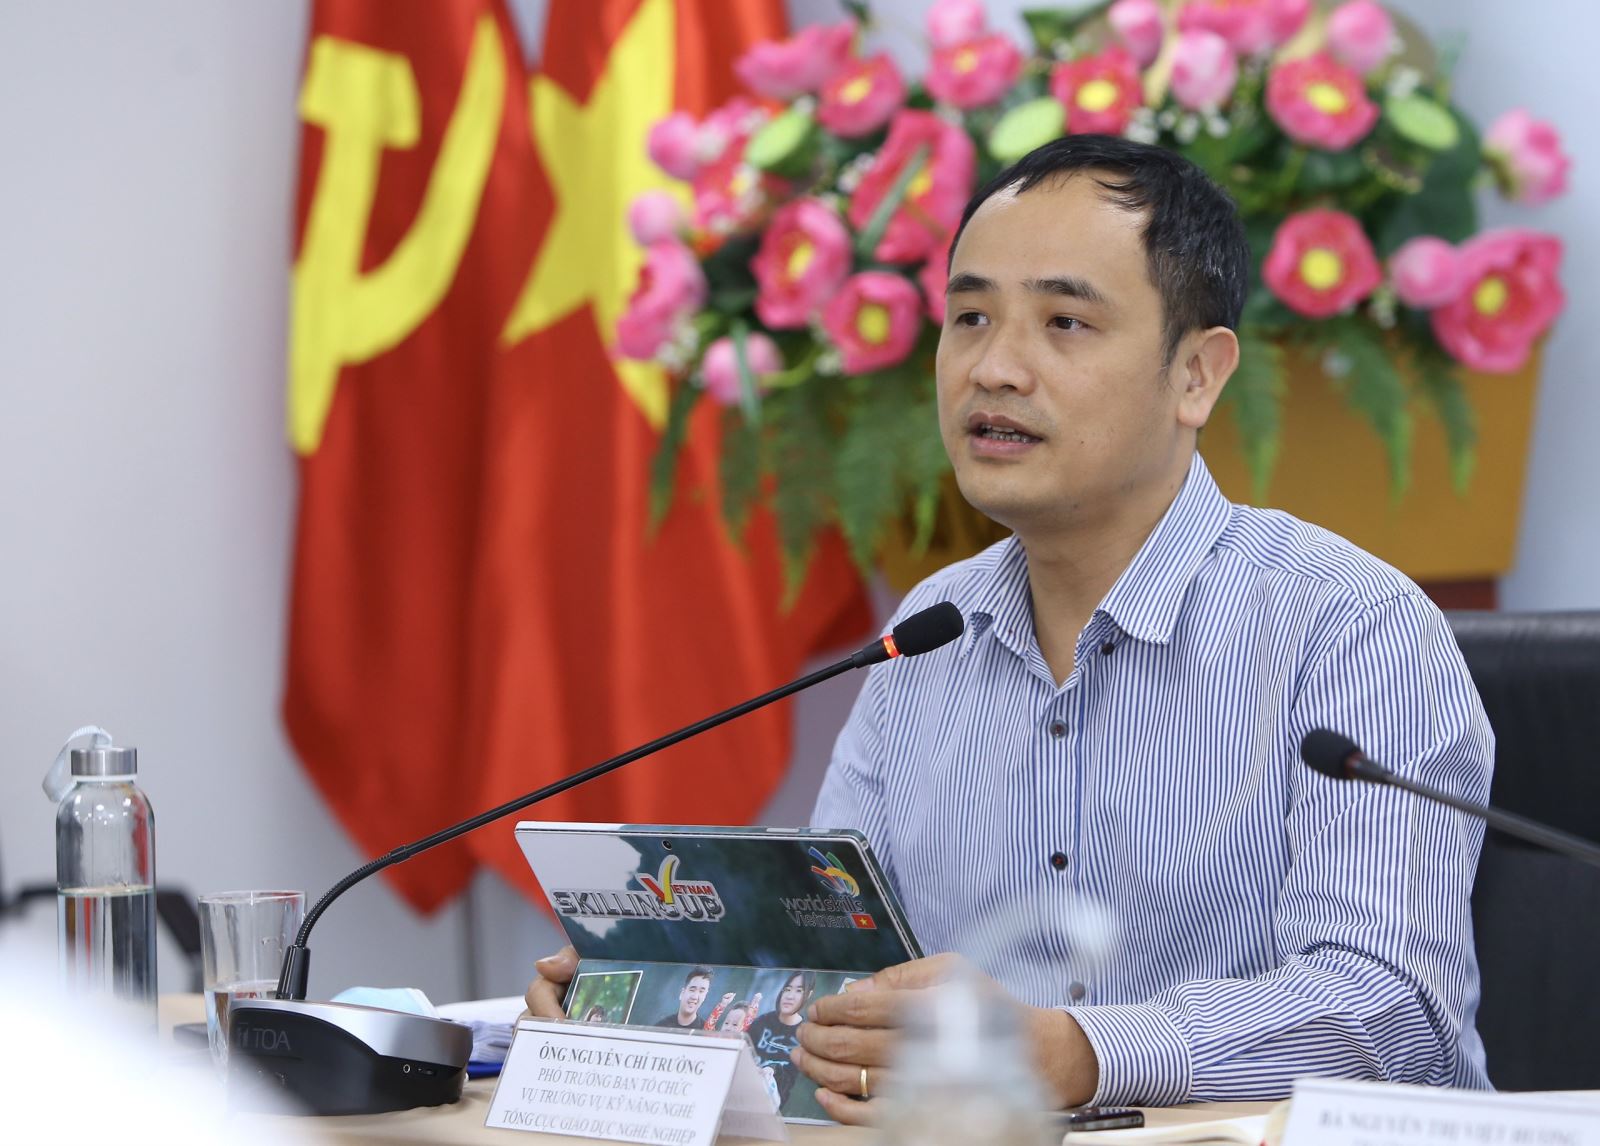 Vụ trưởng Vụ Kỹ năng nghề, Tổng cục Giáo dục nghề nghiệp Nguyễn Chí Trường trả lời báo chí tại cuộc họp.